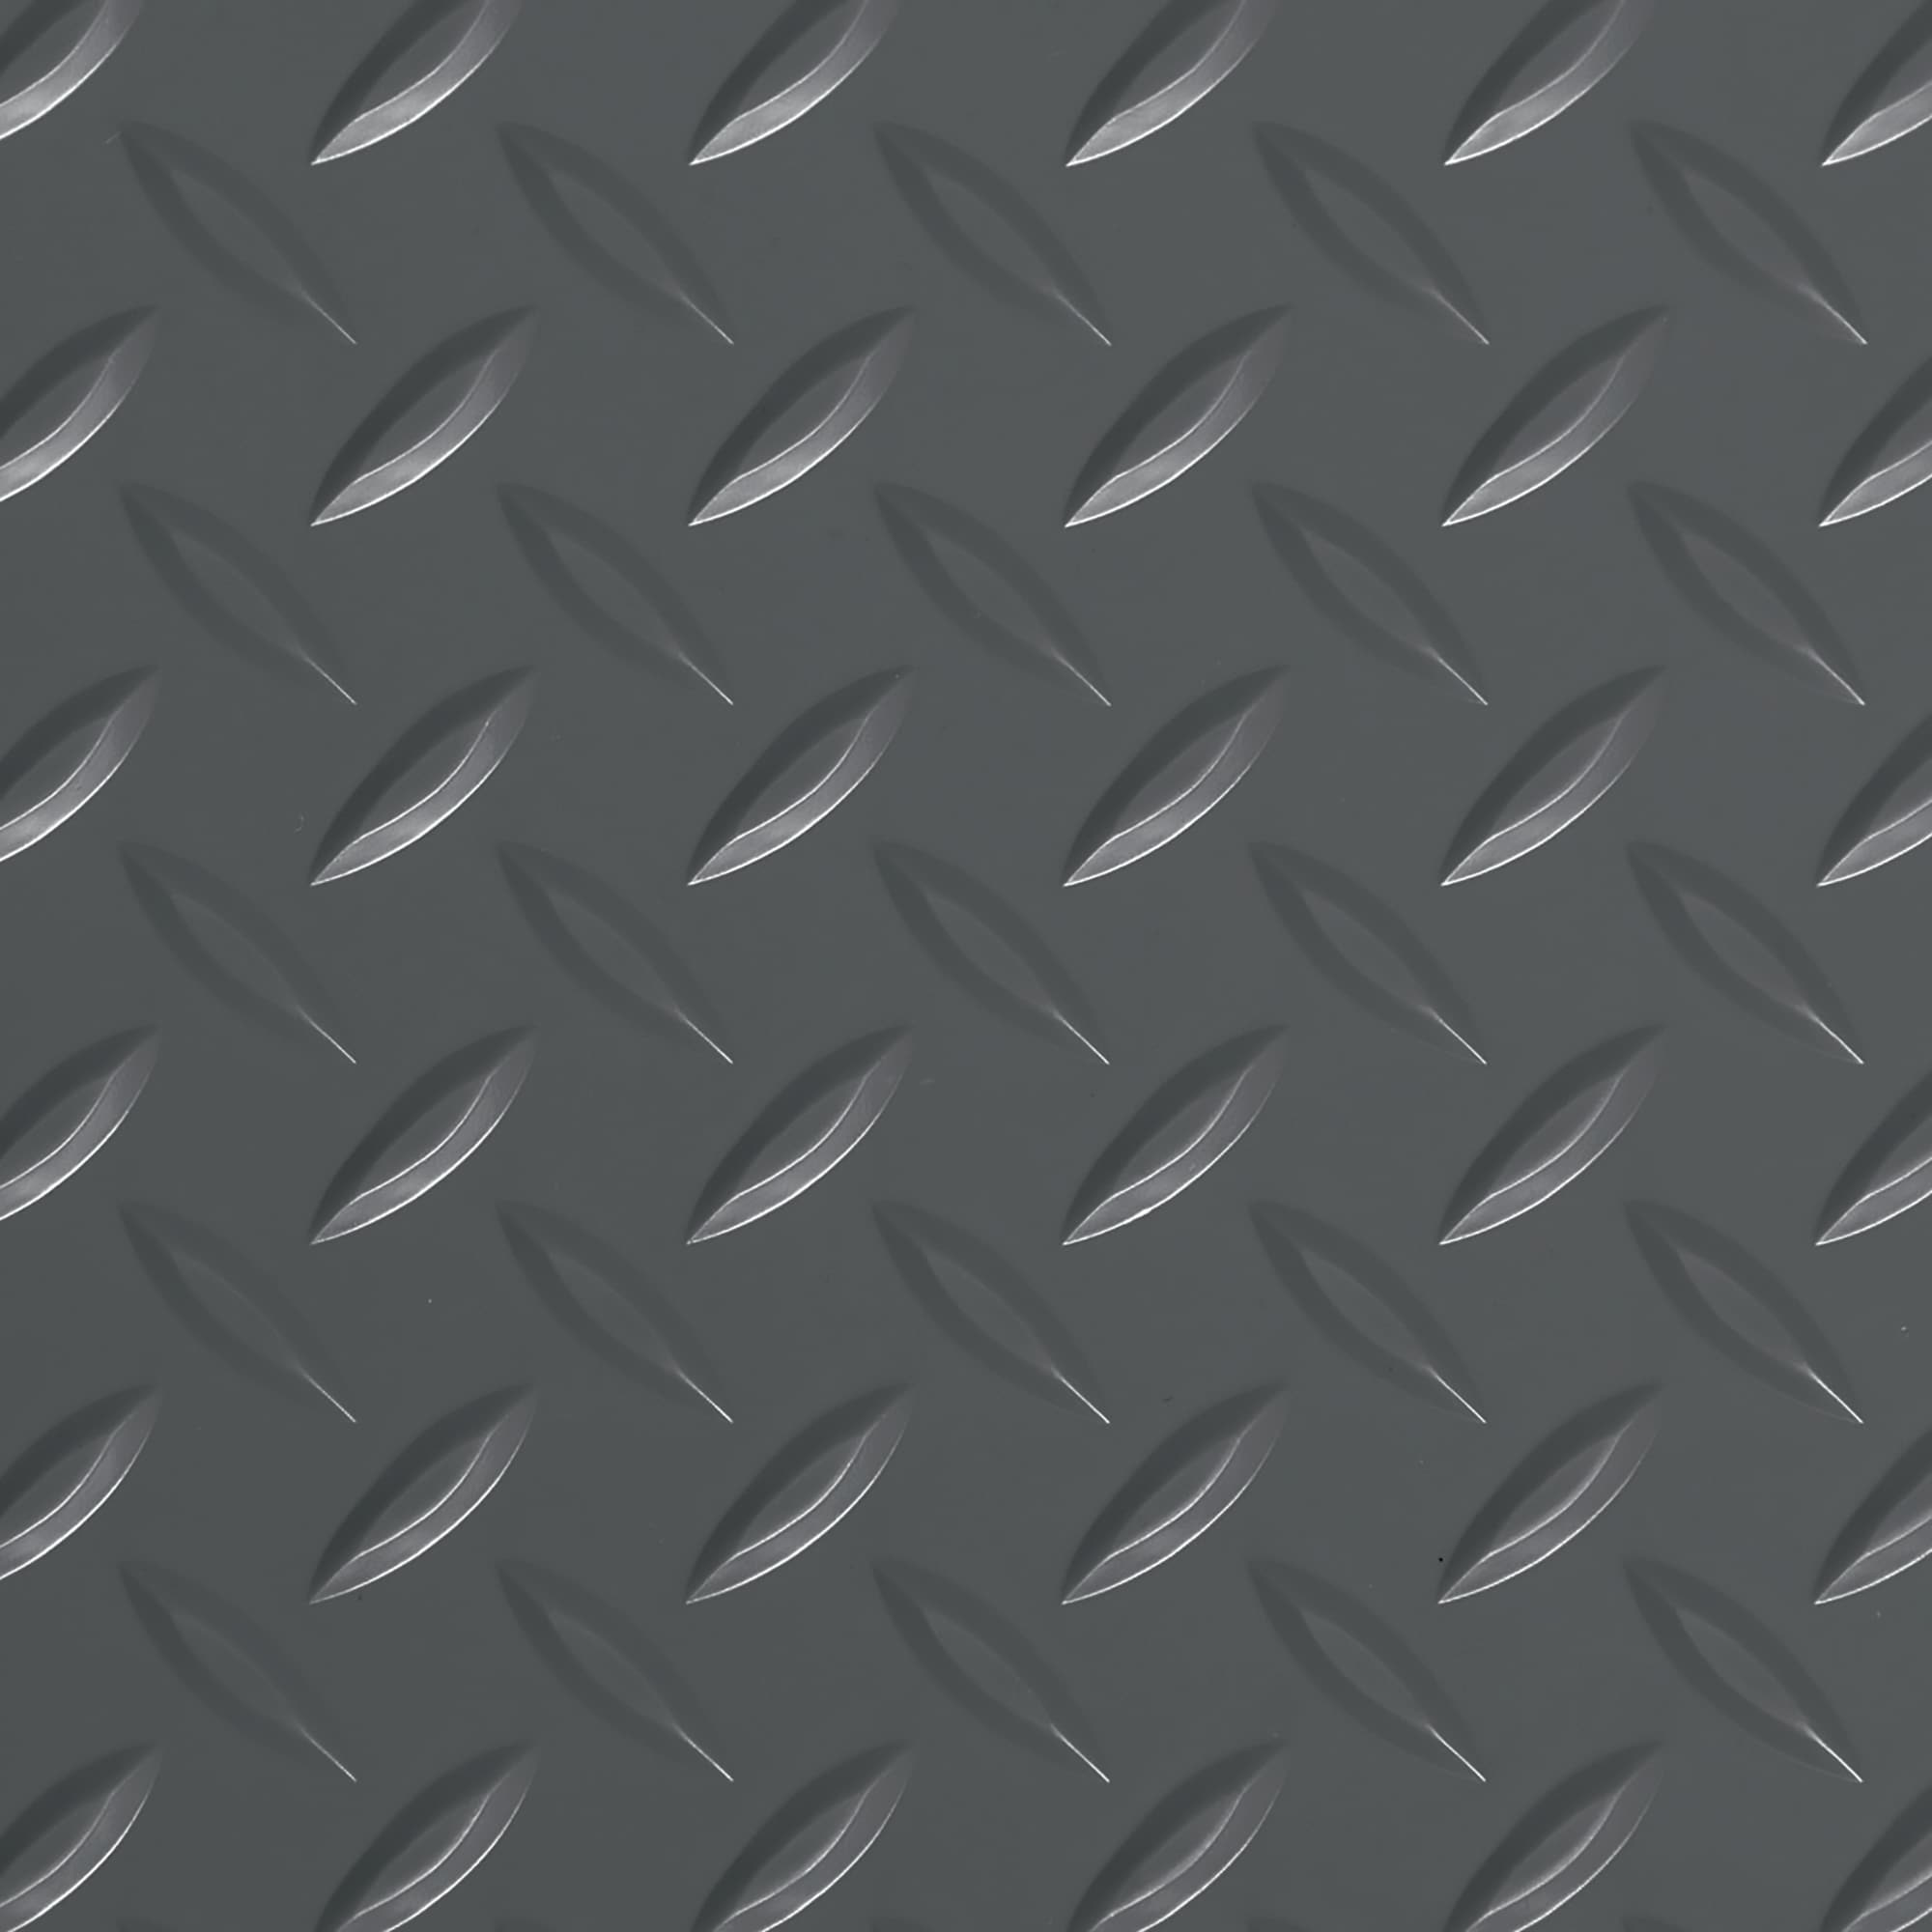  G-Floor Tapete de suelo de garaje con banda de rodadura de  diamante (7.5 x 17 pies, gris pizarra) – Construcción de polivinilo sólido  para una protección superior del piso del garaje 